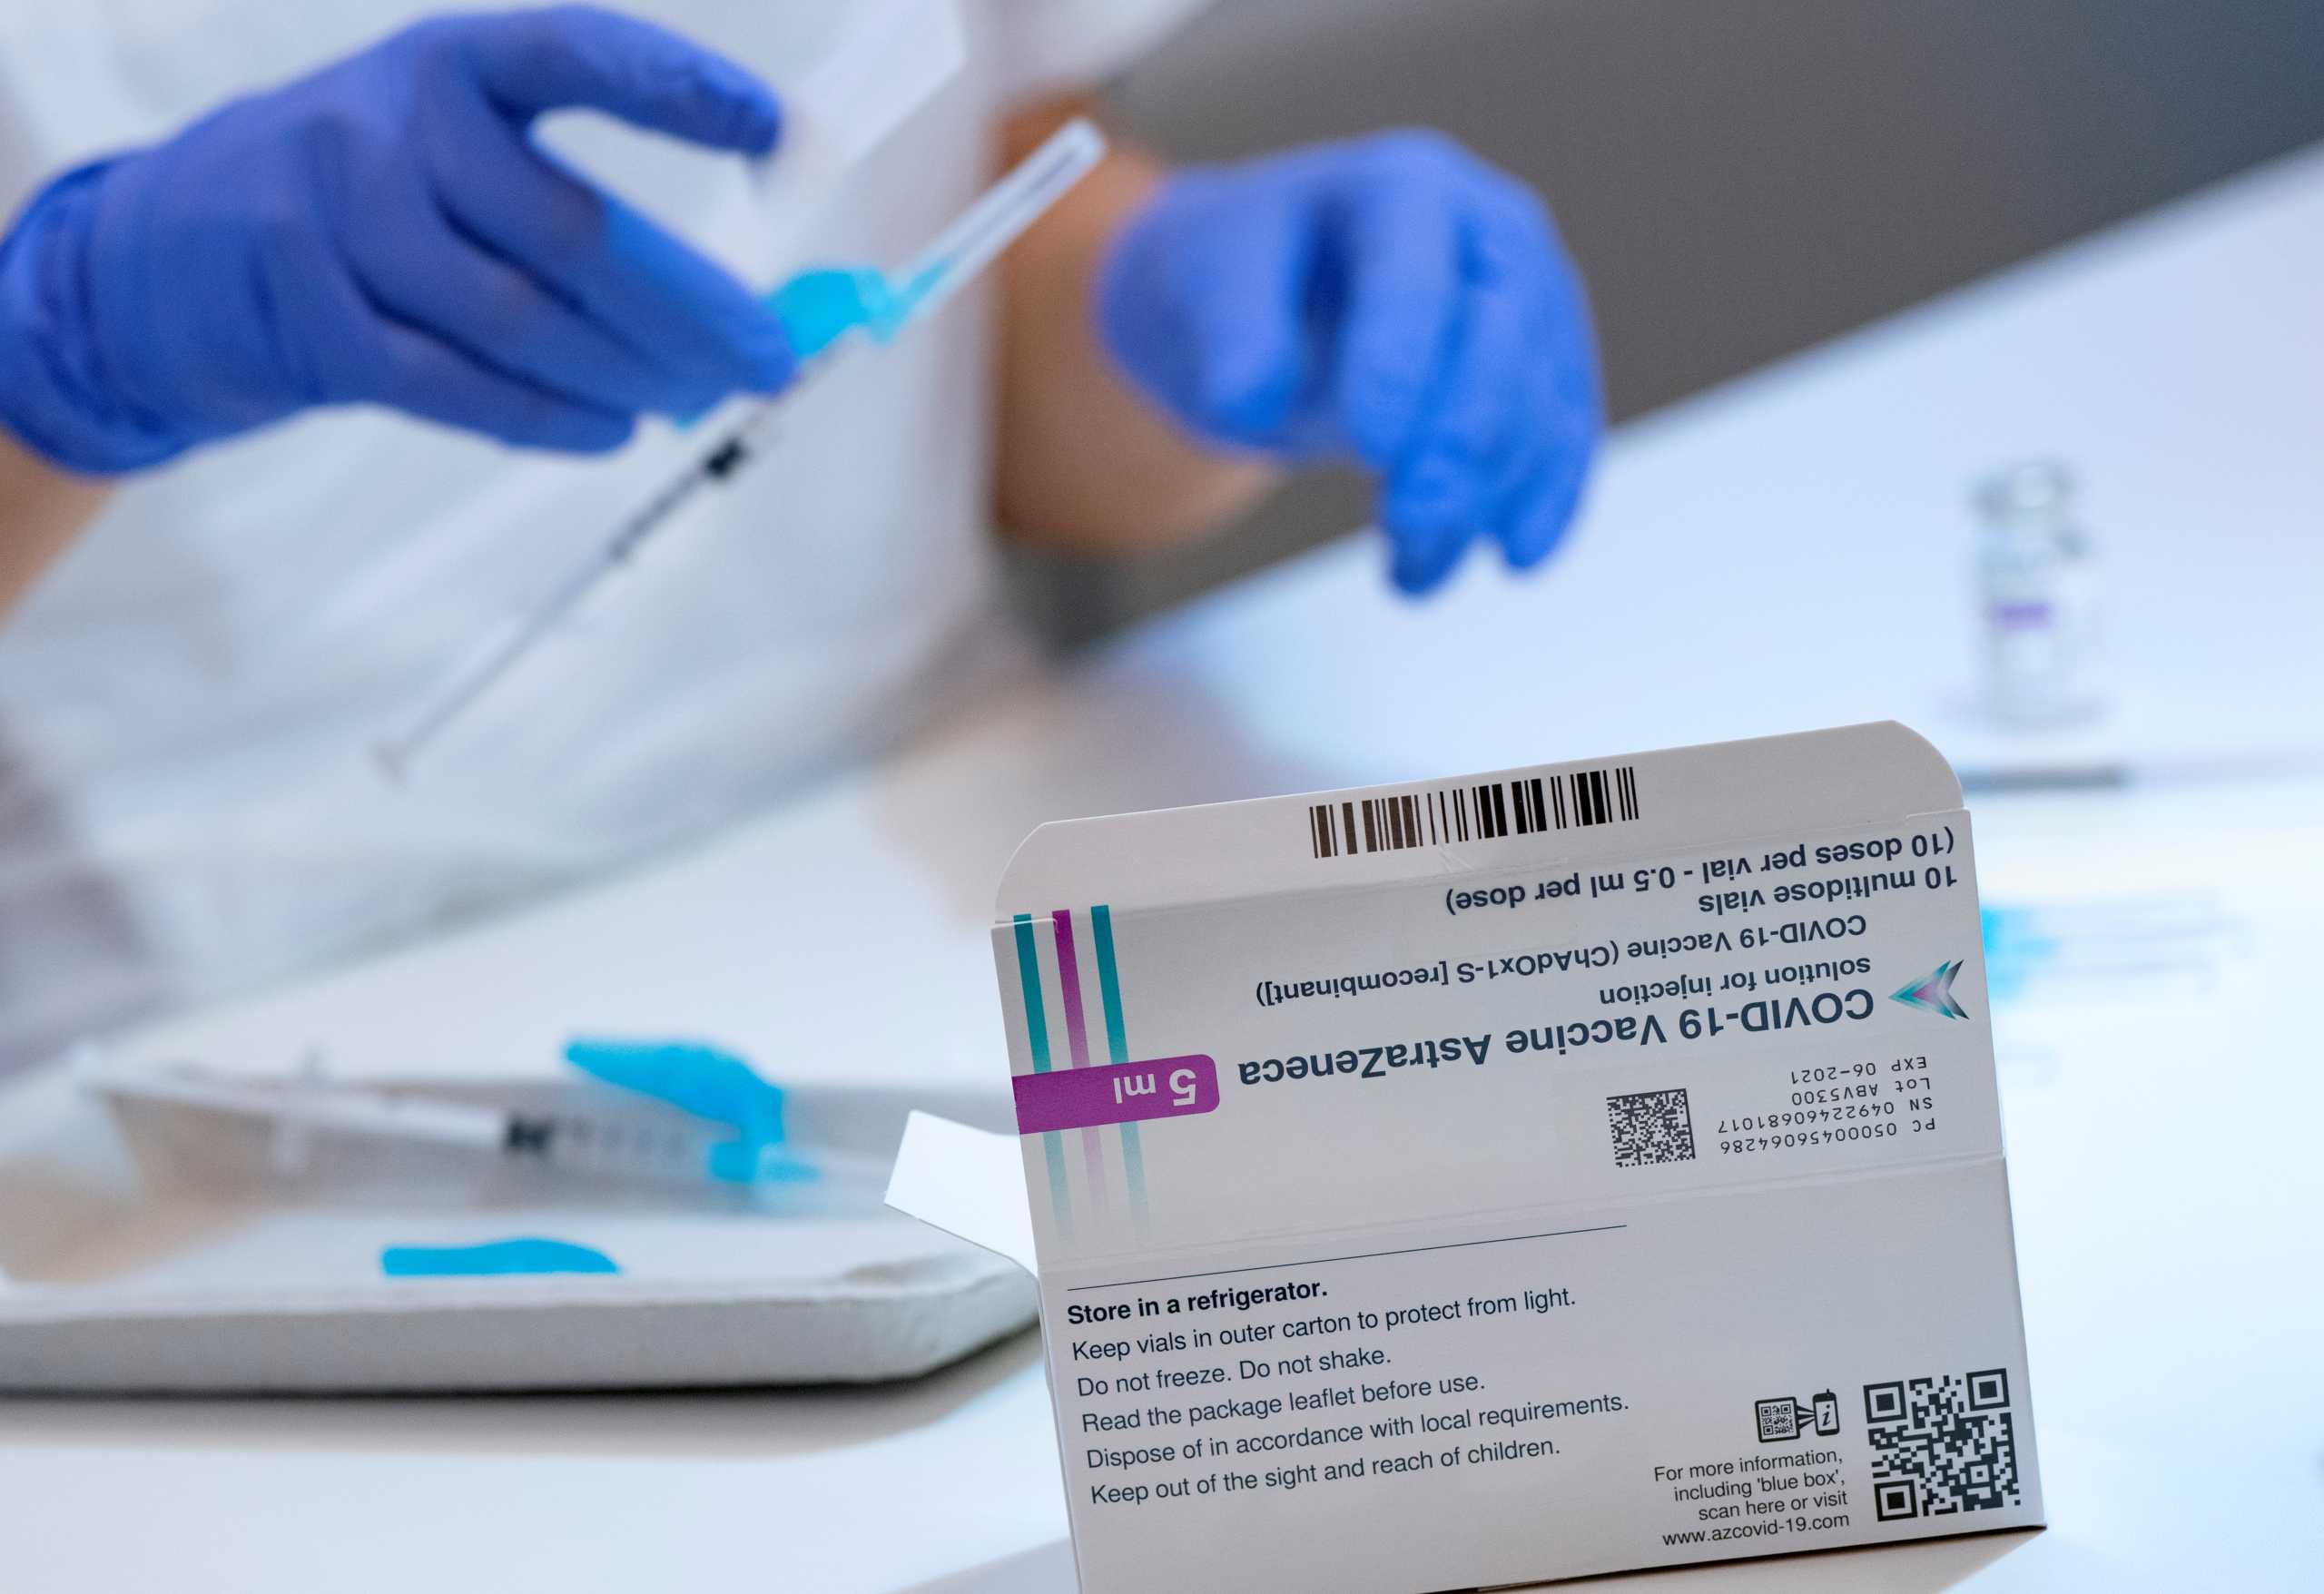 ΕΟΦ: Δεν αποσύρθηκε παρτίδα του εμβολίου της AstraZeneca στην Ελλάδα